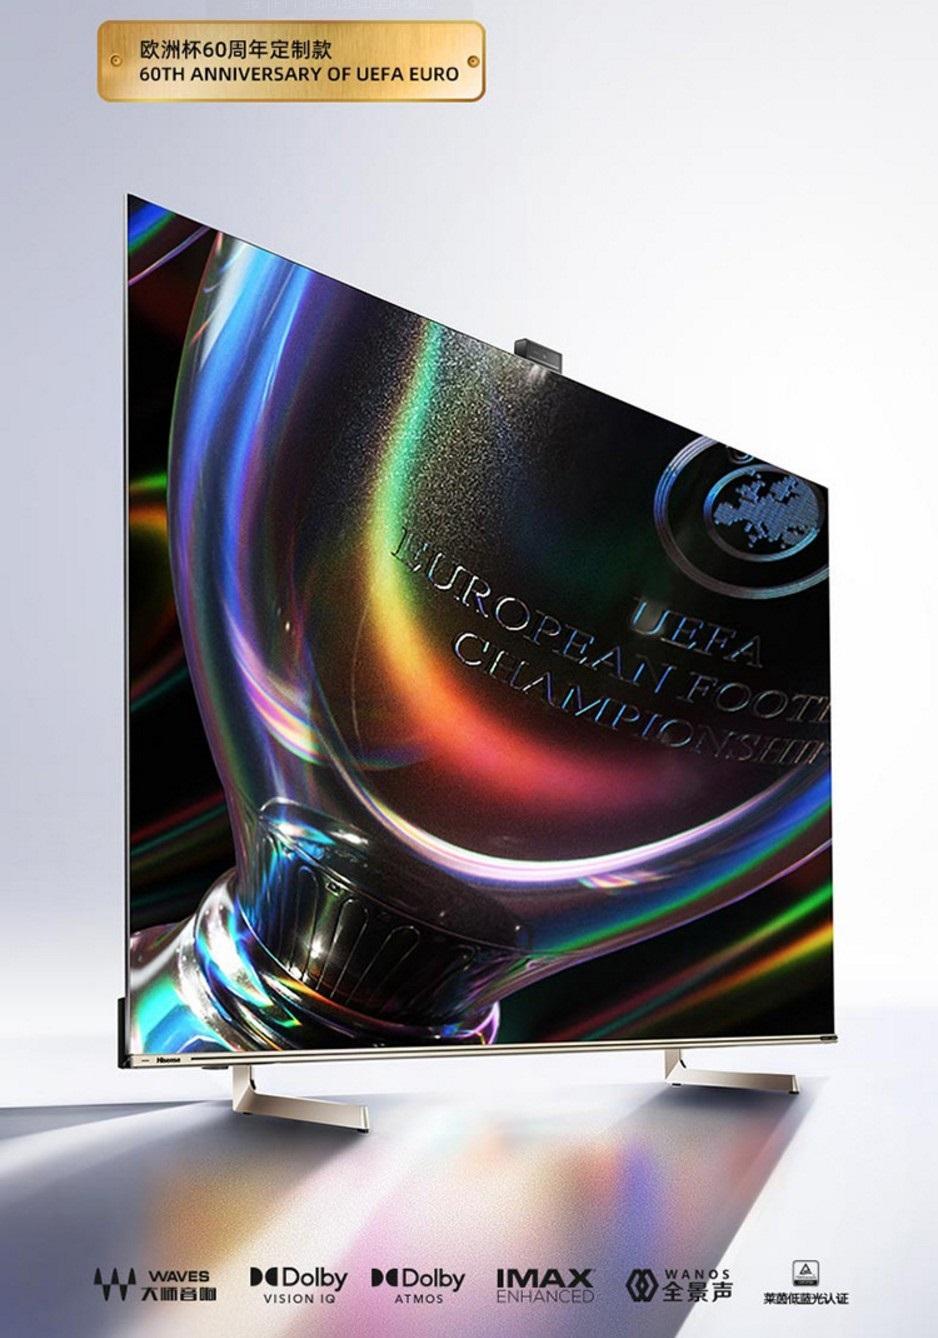 海信发售 U7G Pro 系列 ULED XDR 电视：1600nit 亮度，144Hz 可变刷新率